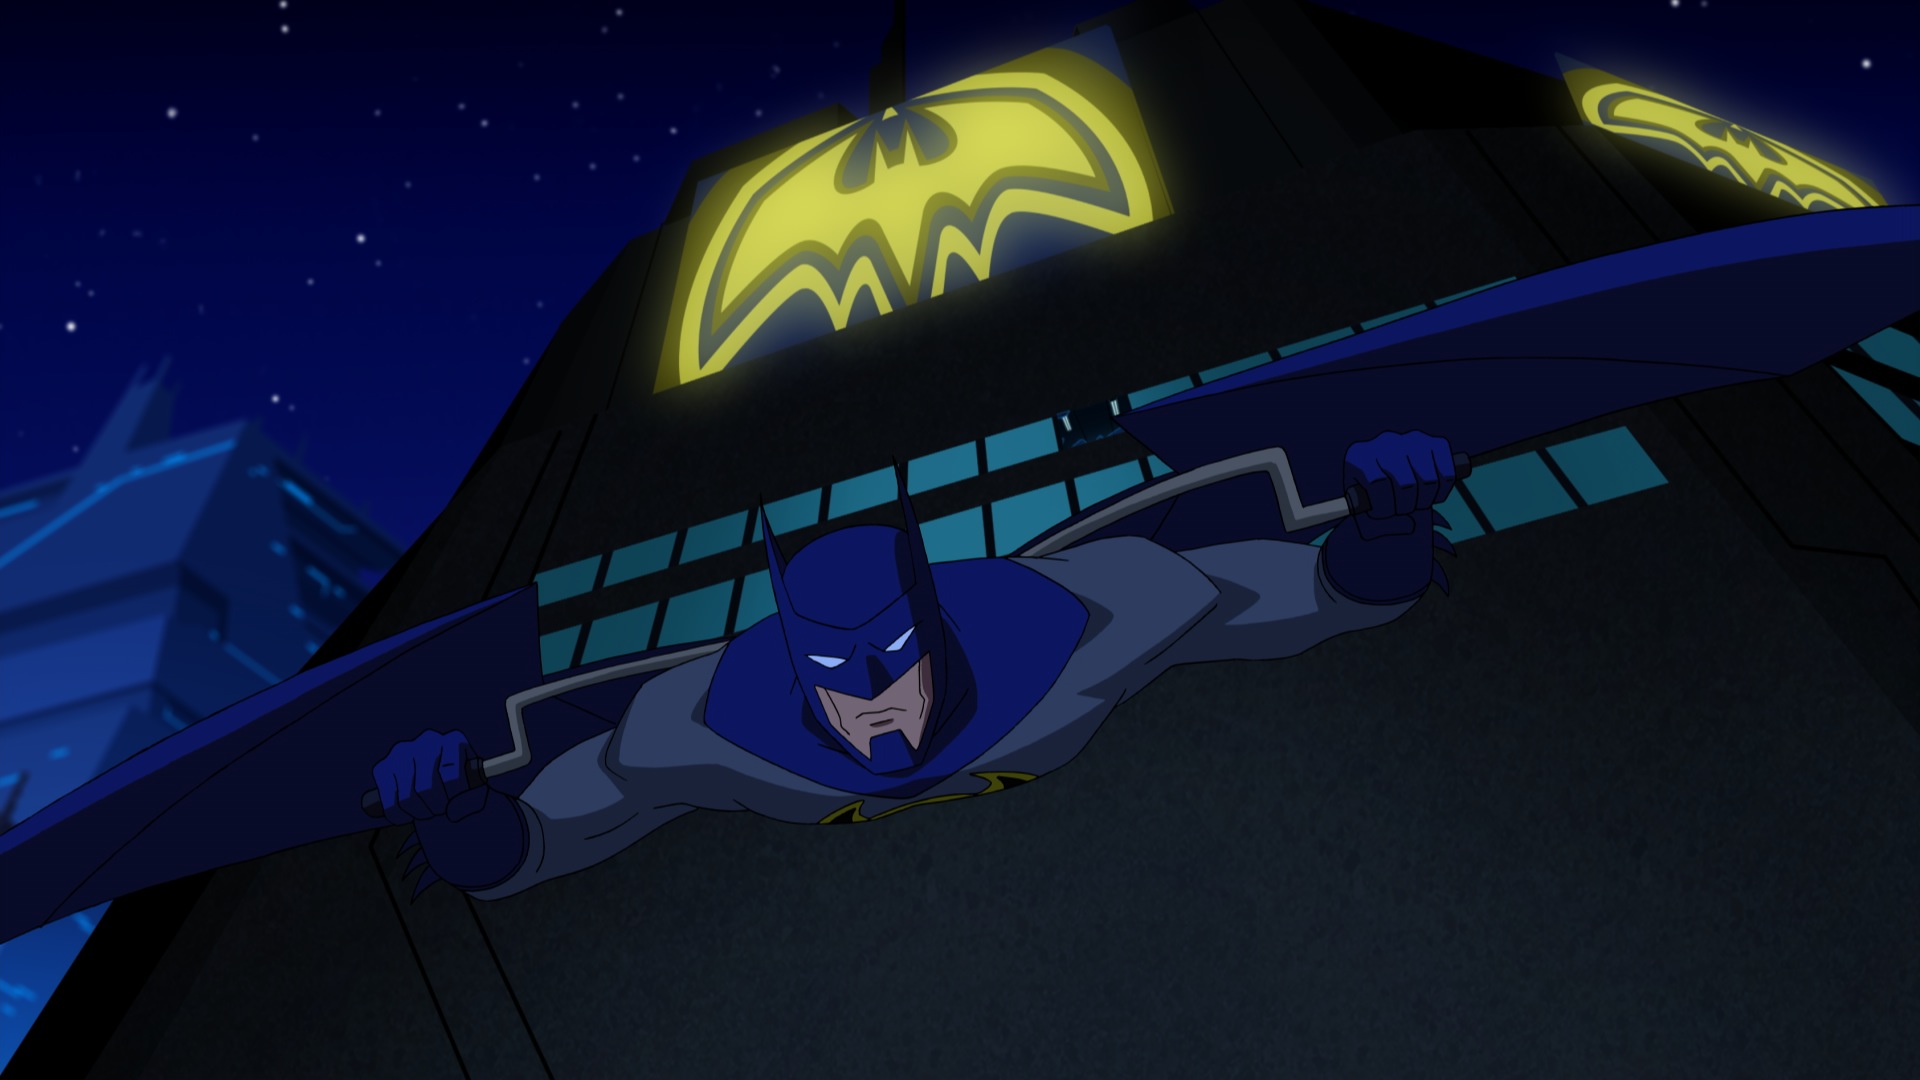 Скачать обои бесплатно Кино, Бэтмен, Комиксы Dc, Безграничный Бэтмен: Хаос картинка на рабочий стол ПК